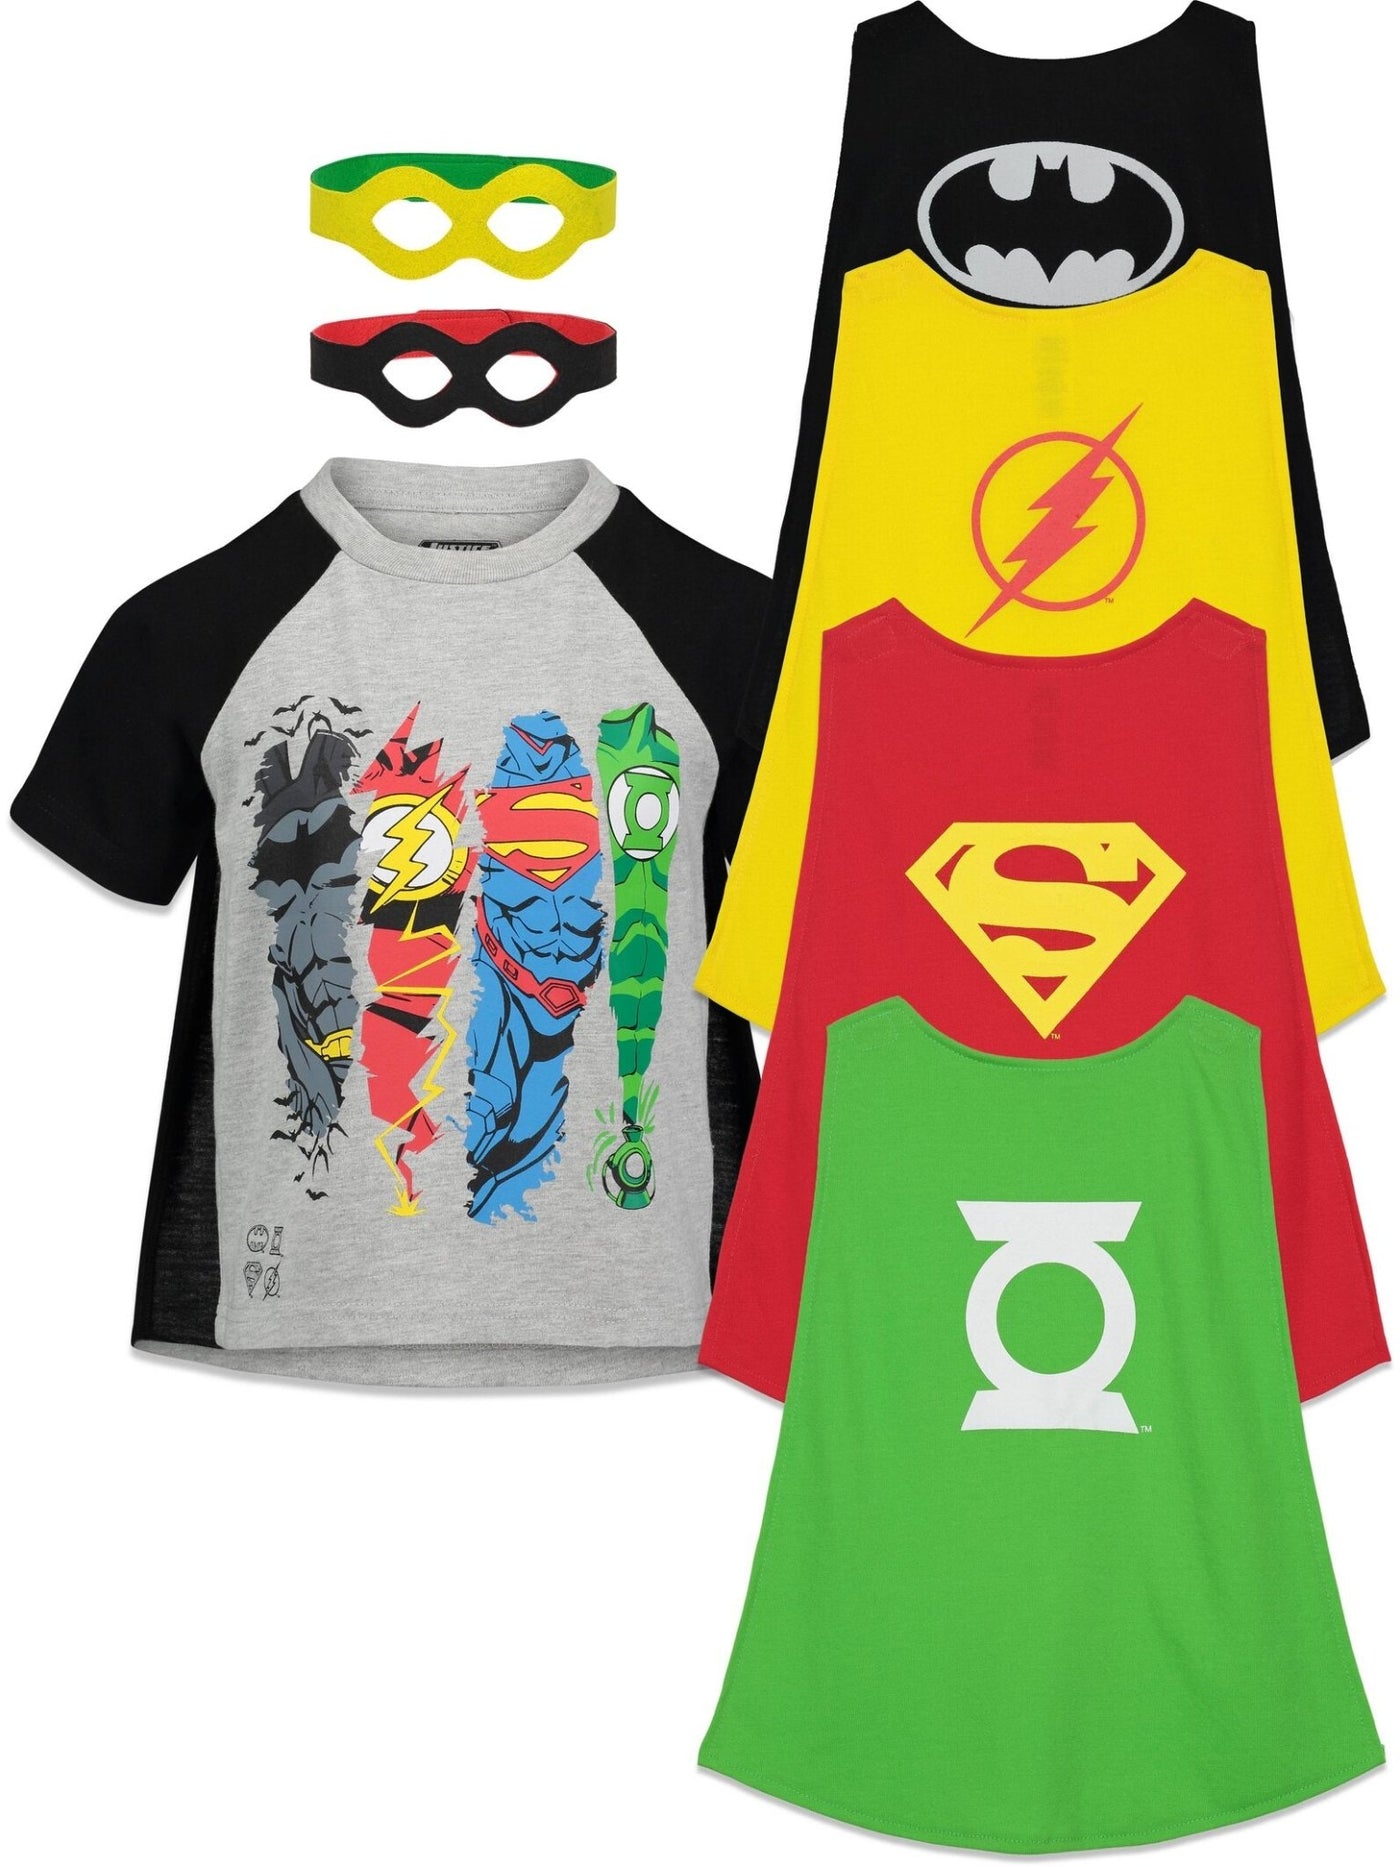 DC Comics Justice League Costume T-Shirt Capes and Masks 7 Piece Outfit Set - imagikids